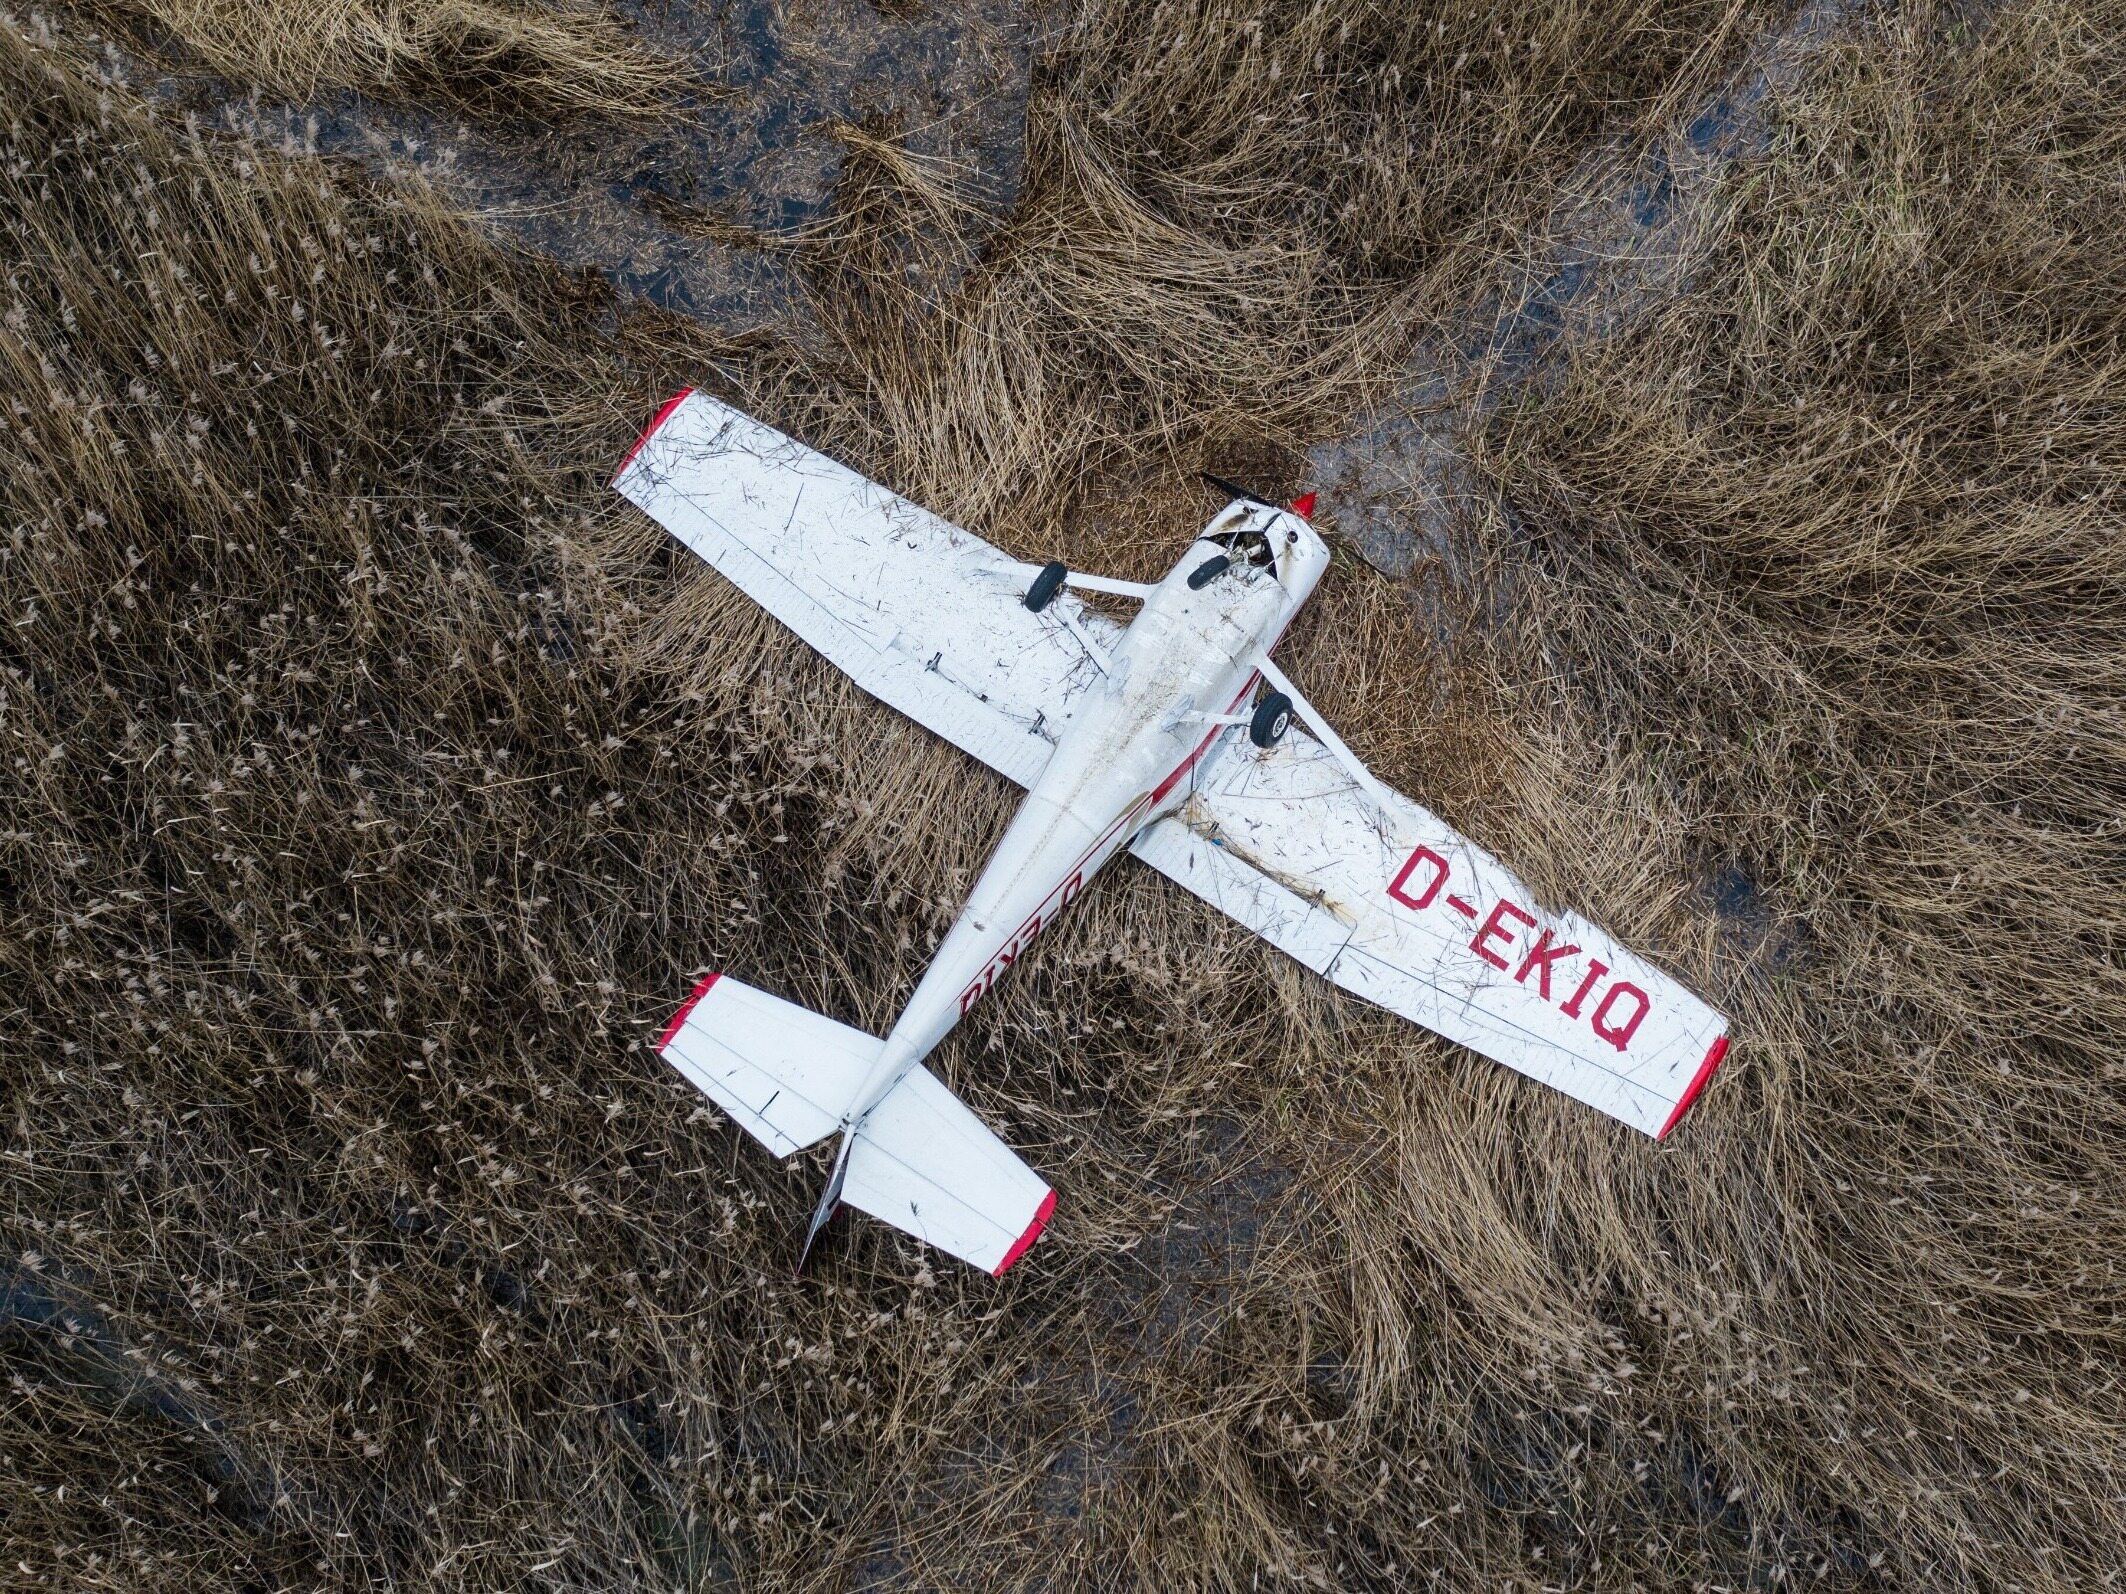 samolot spadł i stał się atrakcją turystyczną. właścicielka apeluje do prokuratury